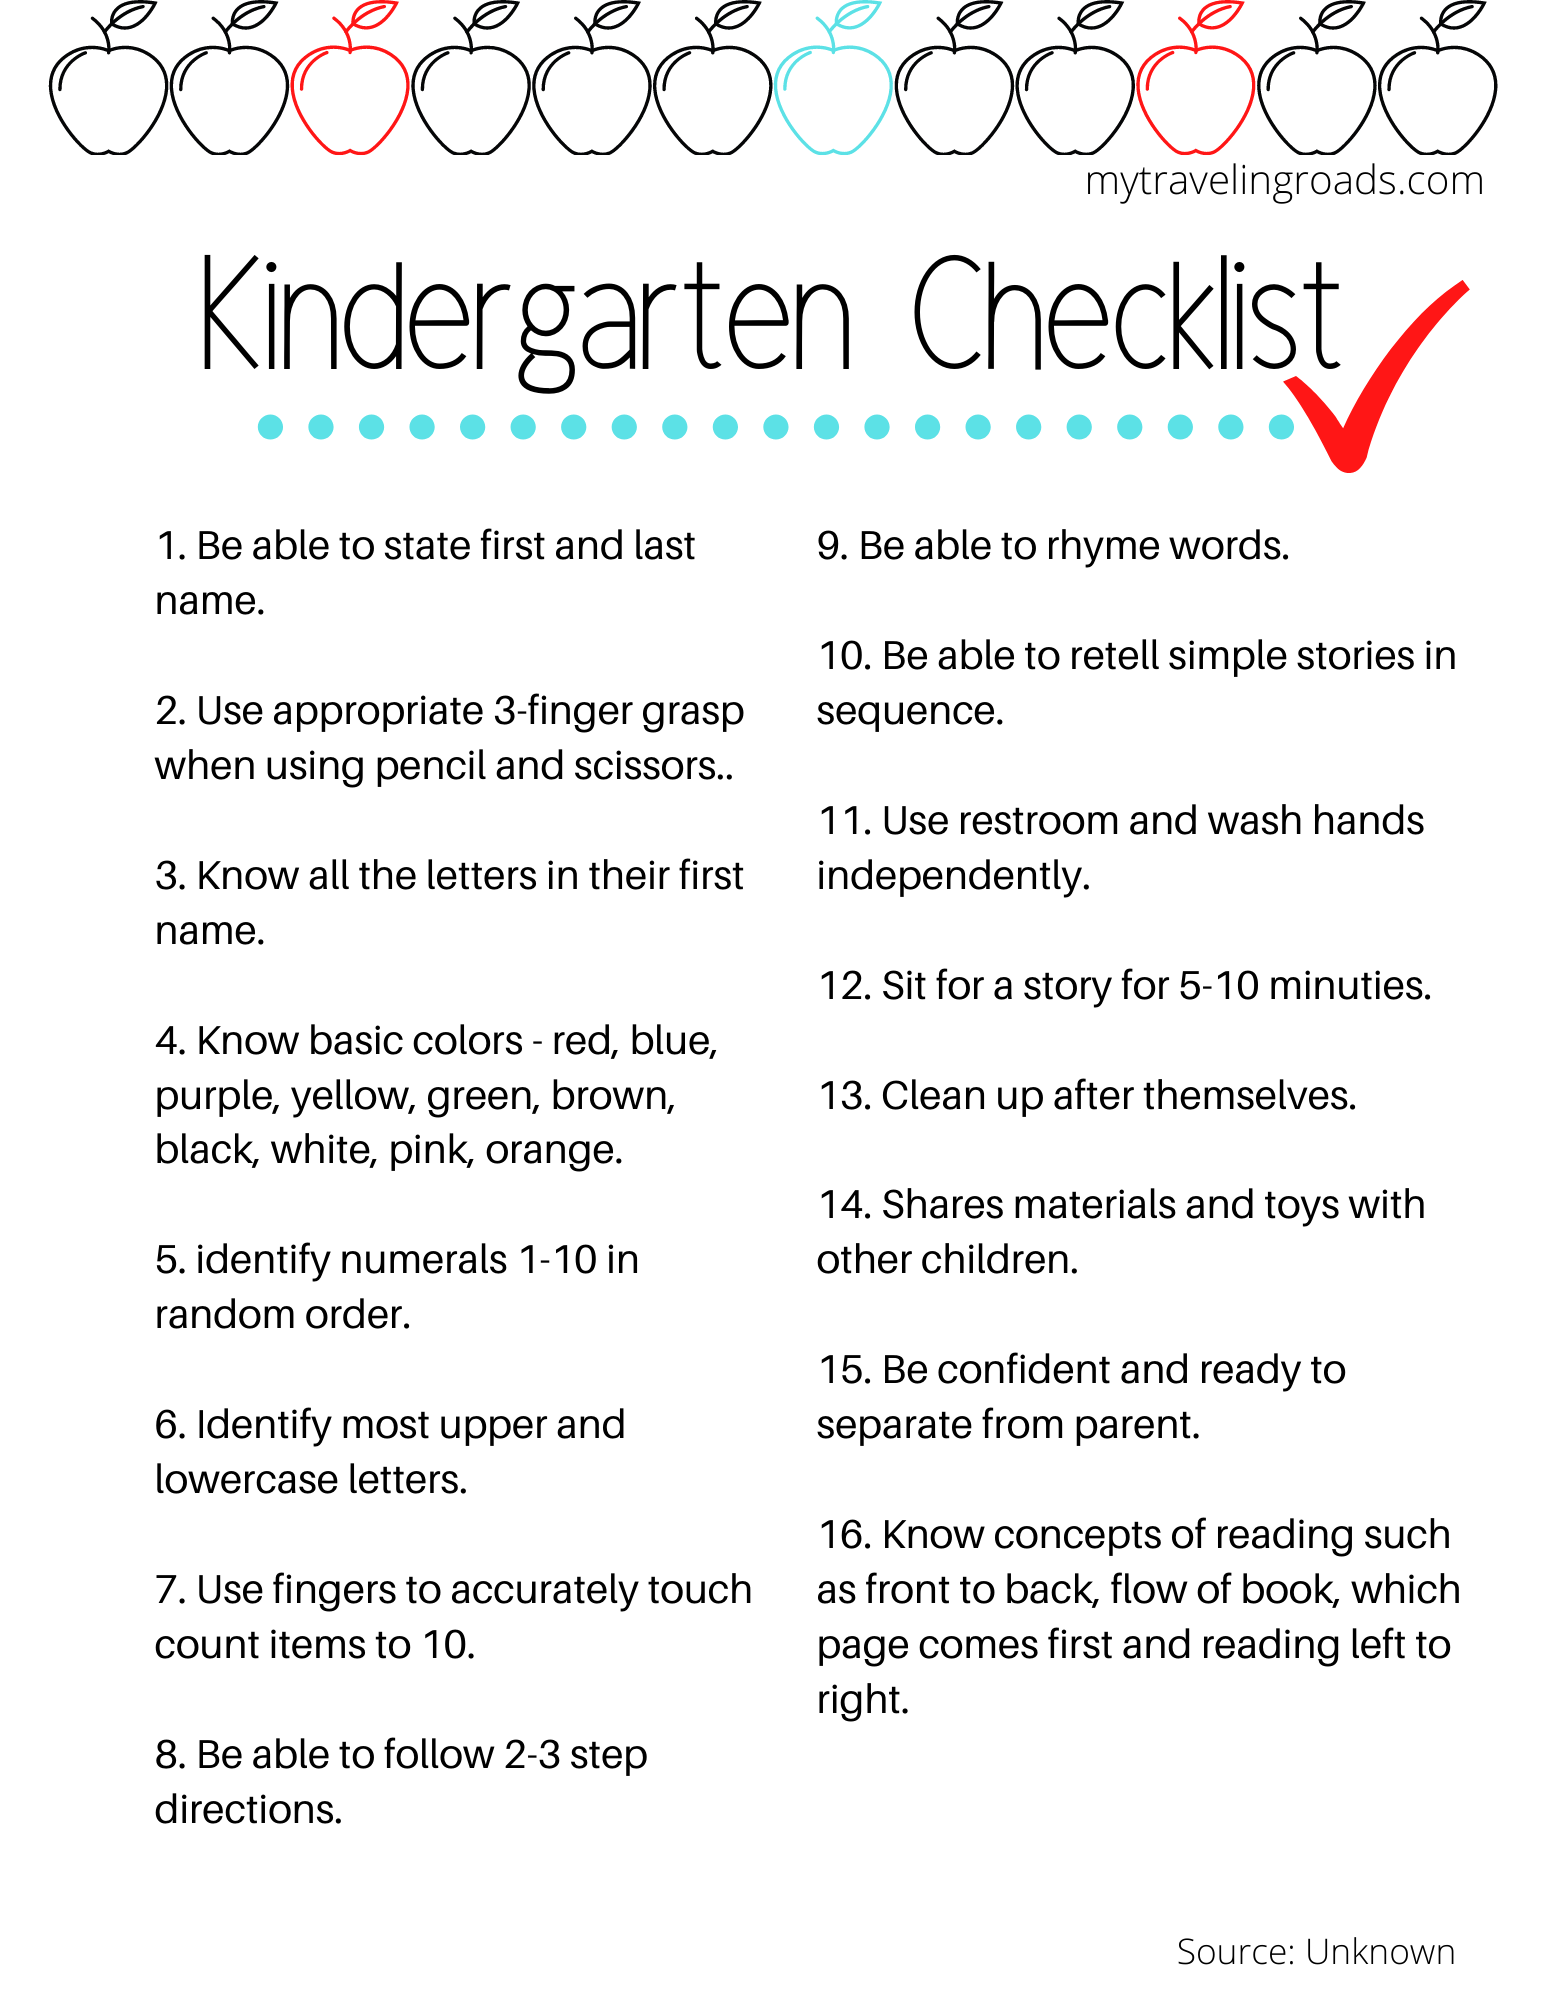 Kindergarten Readiness Checklist Printable